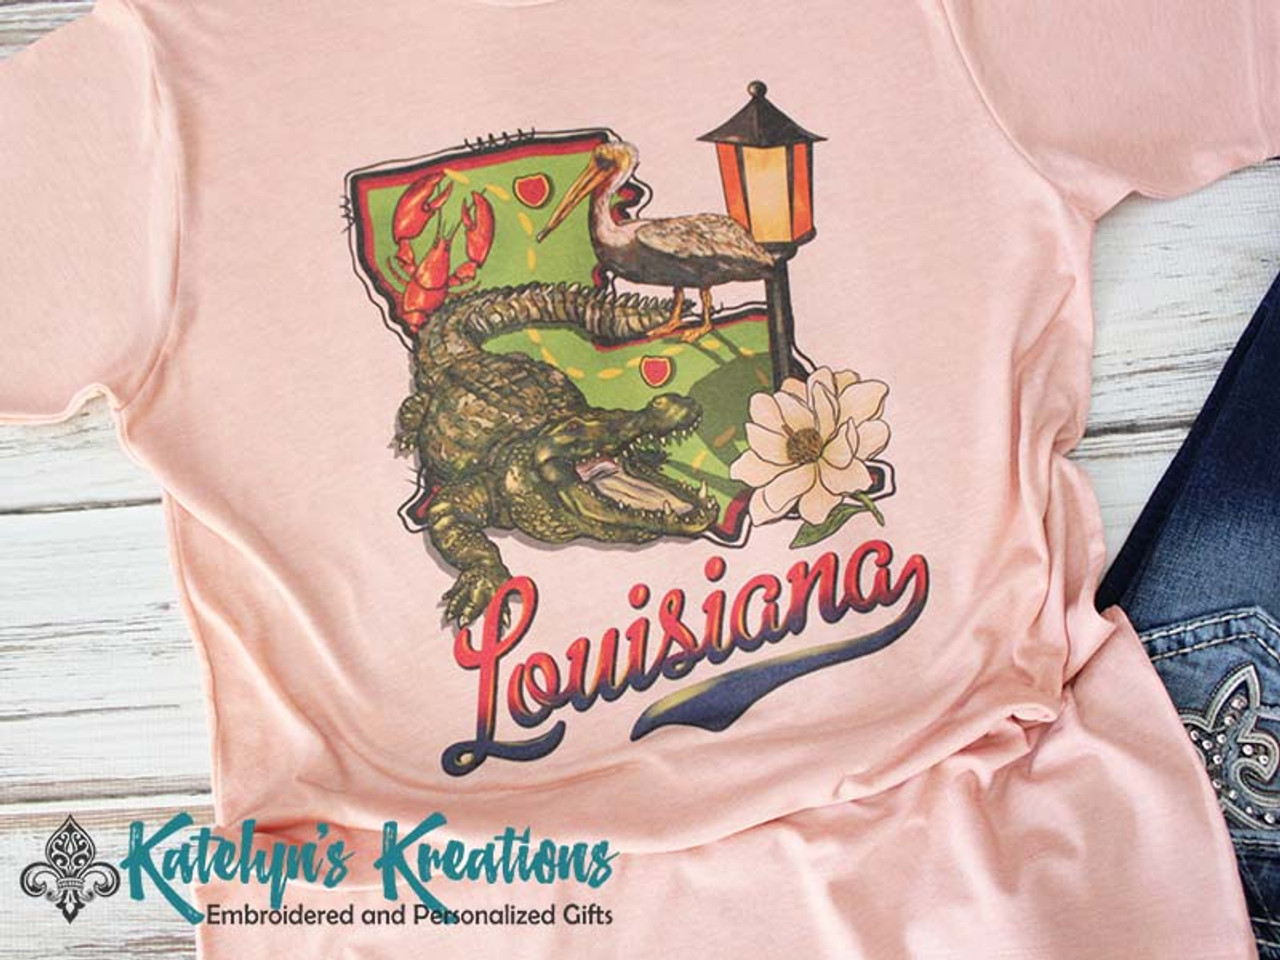 Louisiana Vintage Retro T-shirt Gift Louisiana Tee Retro 